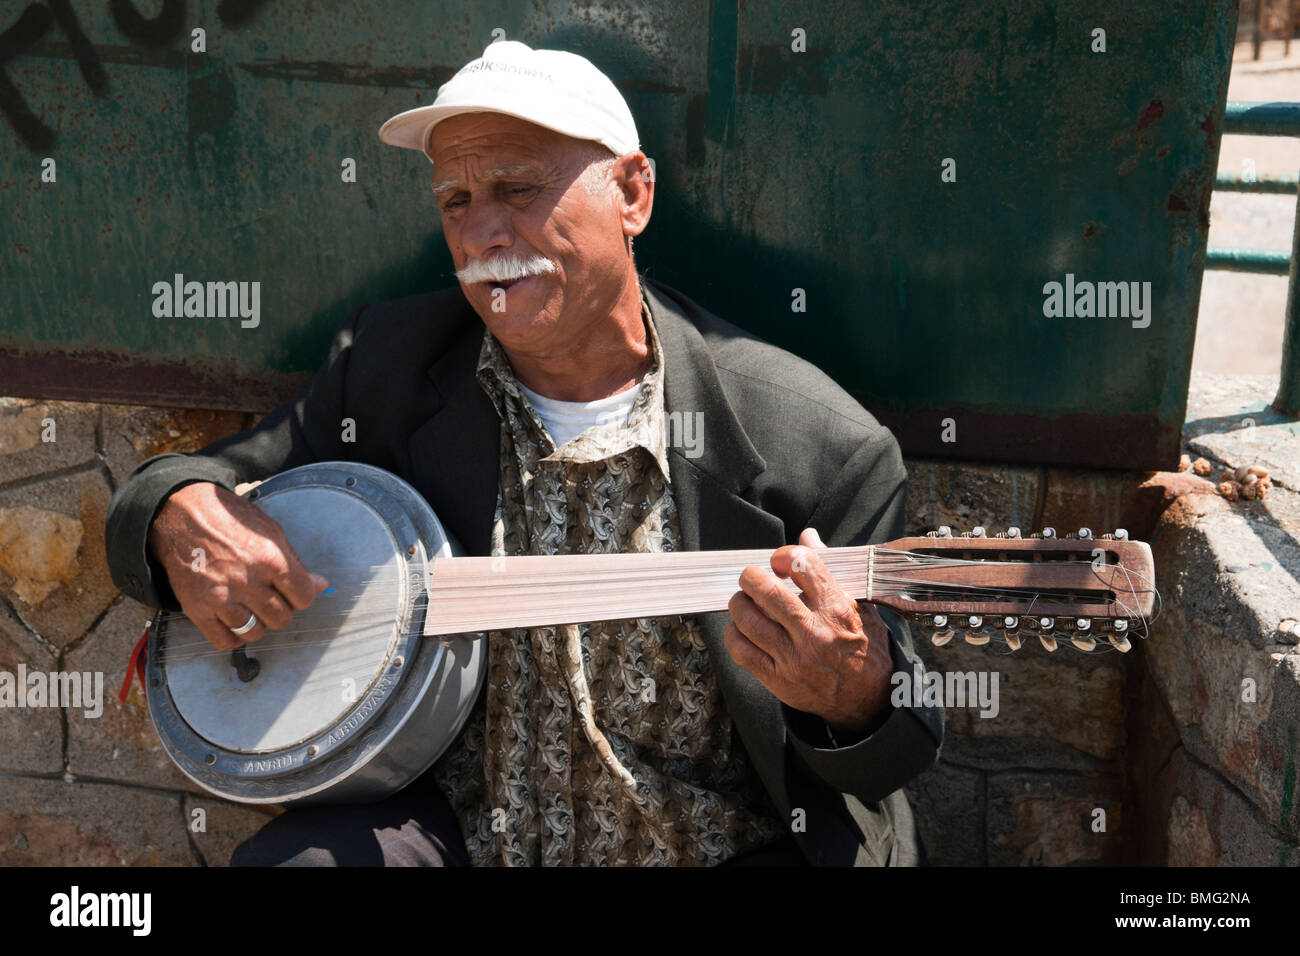 Turquie Antalya - musicien de rue de la rue - chanteur avec cumbus  (prononcé) joomboosh hybride turque du banjo fretless et ud Photo Stock -  Alamy